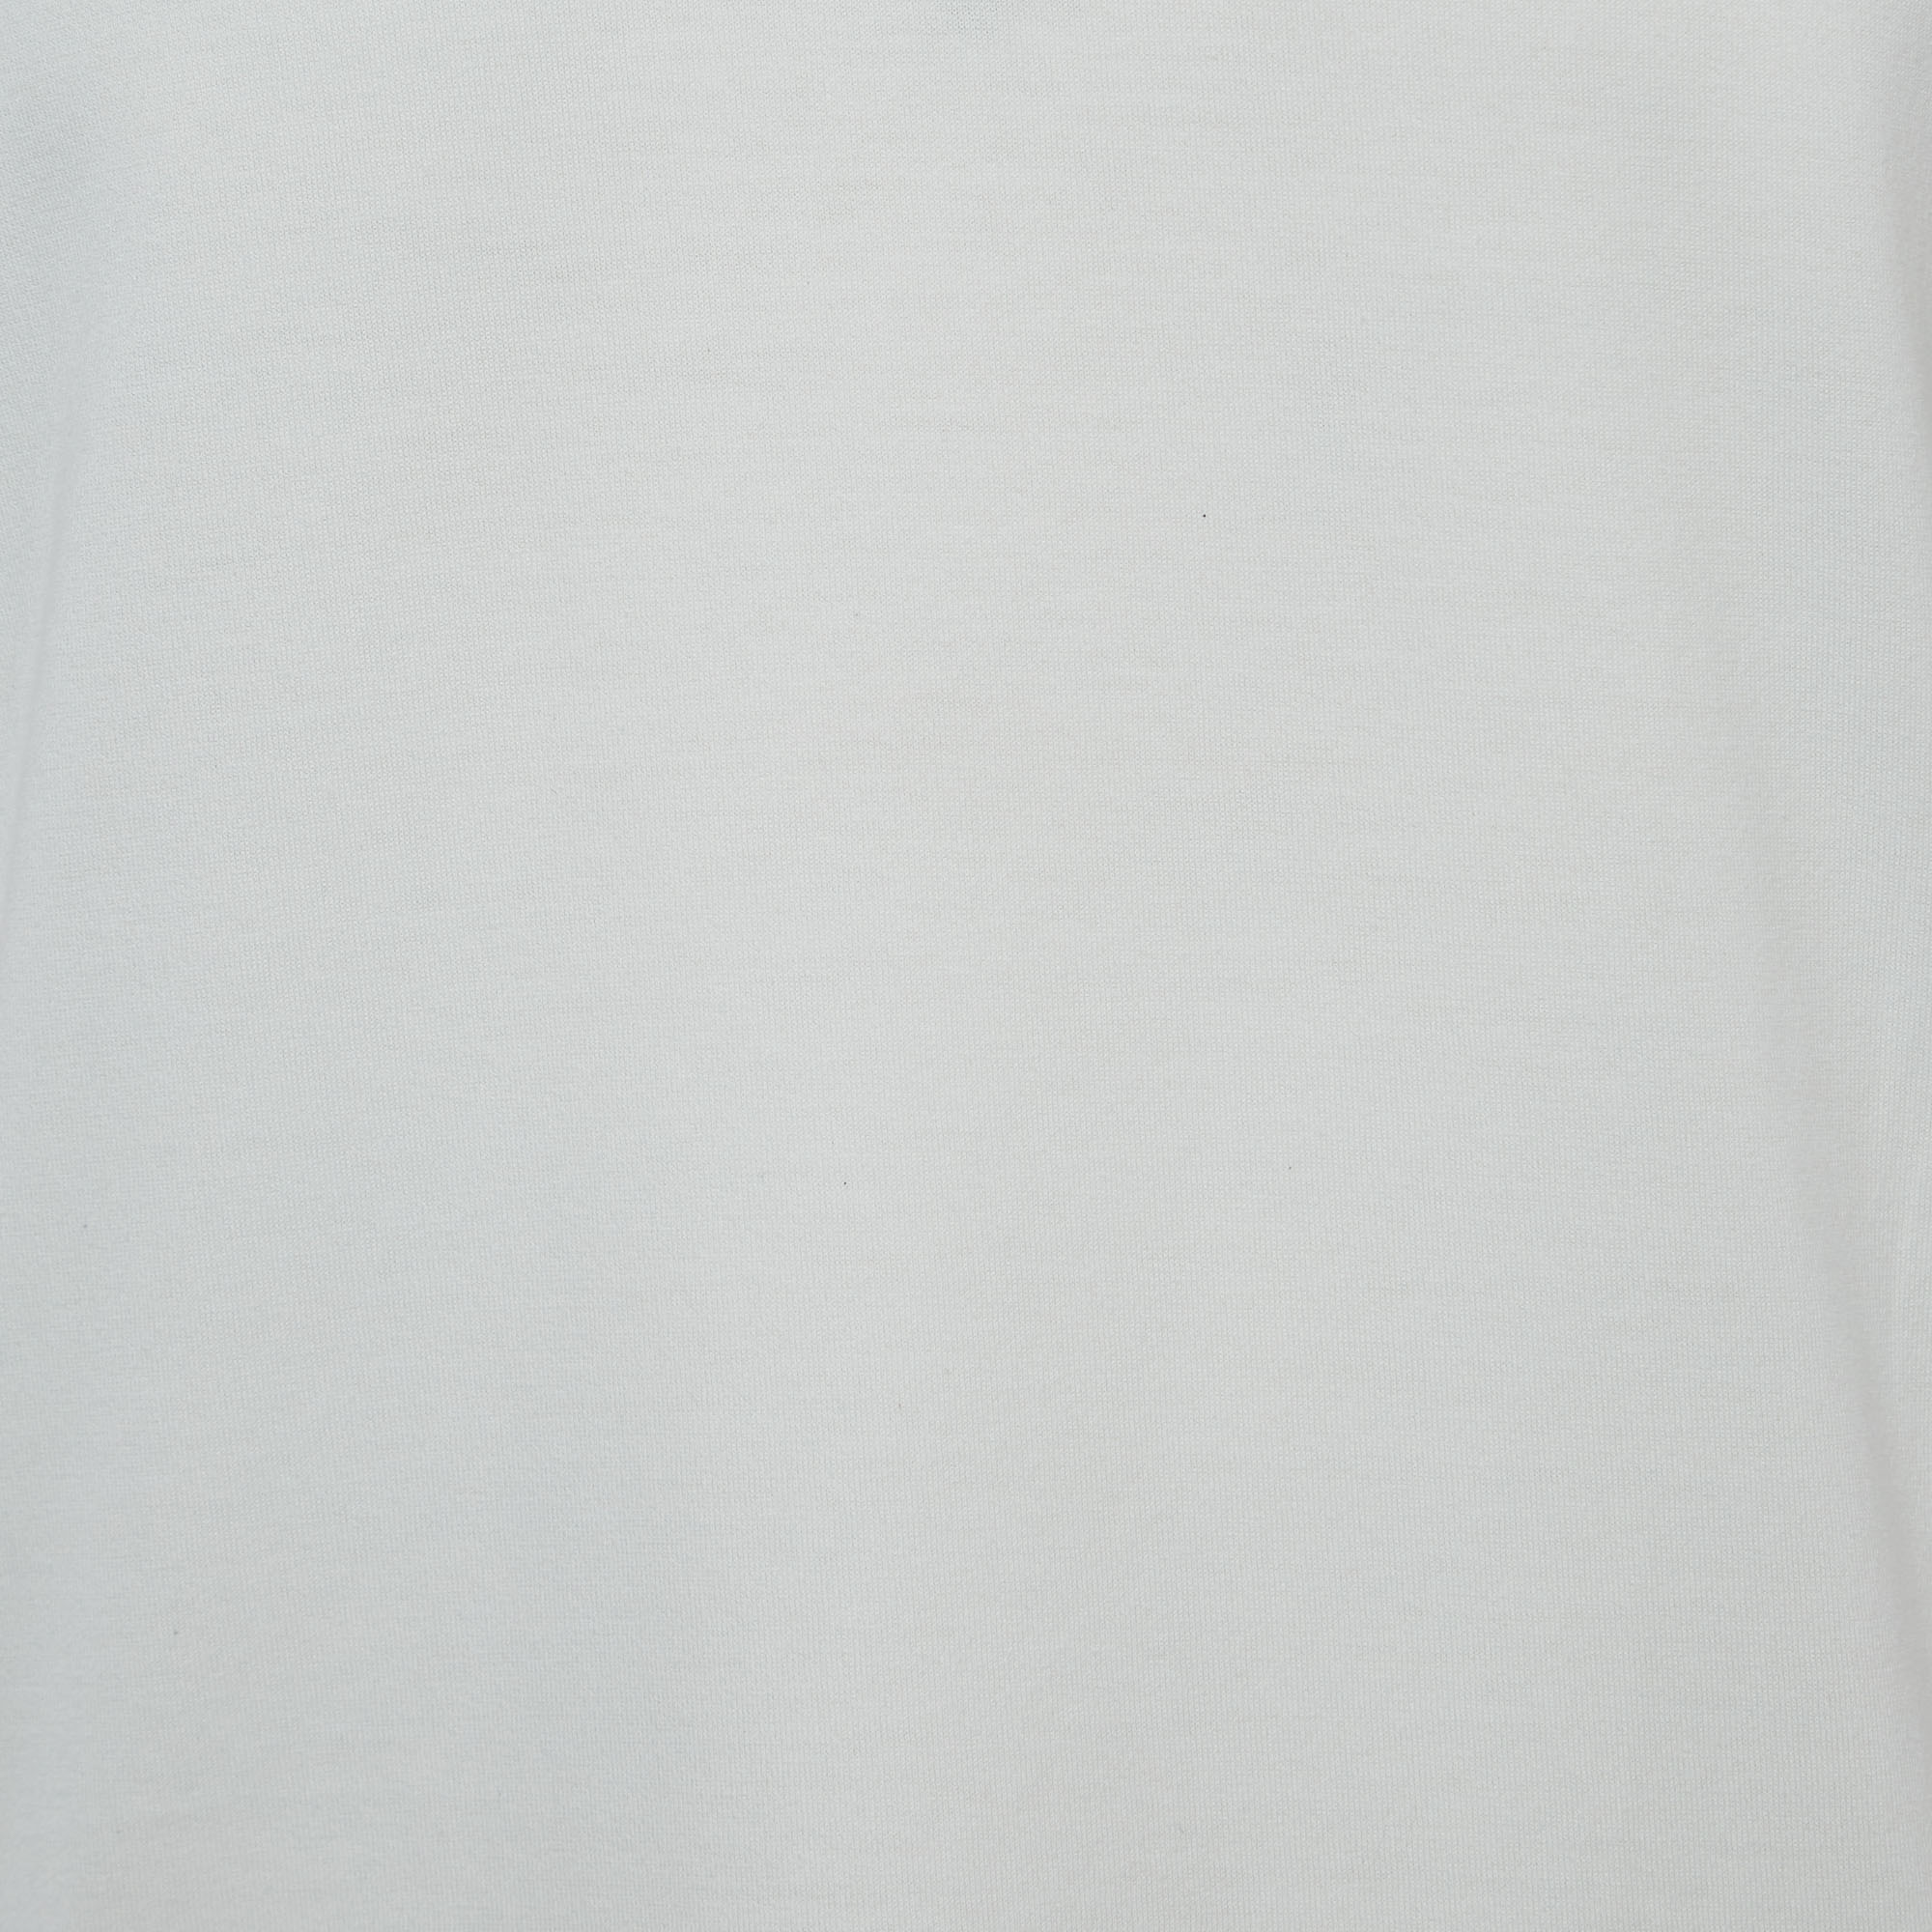 Dolce & Gabbana White Cotton V-Neck T-Shirt M